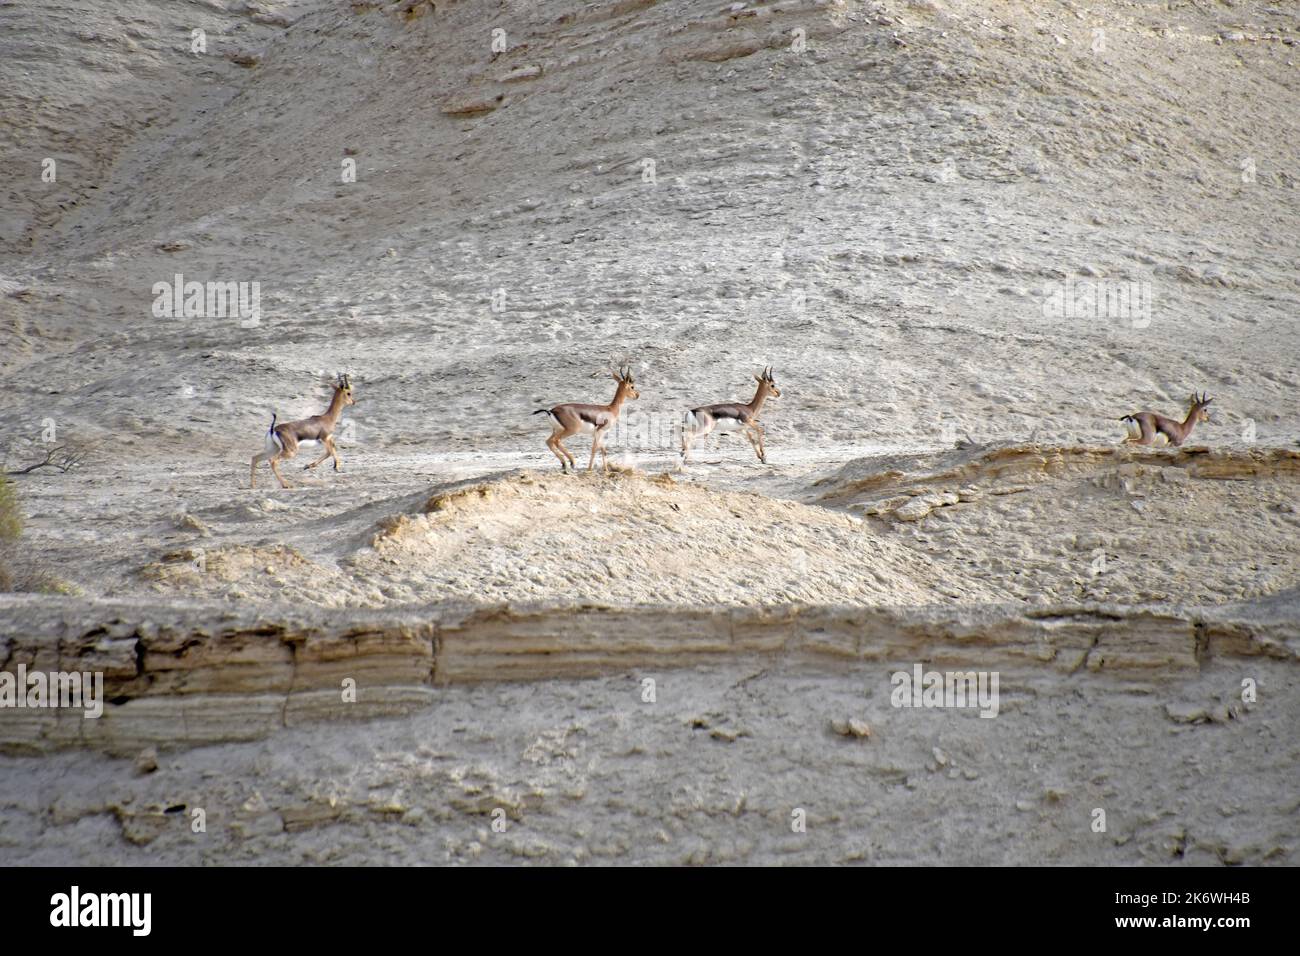 Grupo Gazelle corre en el desierto Foto de stock